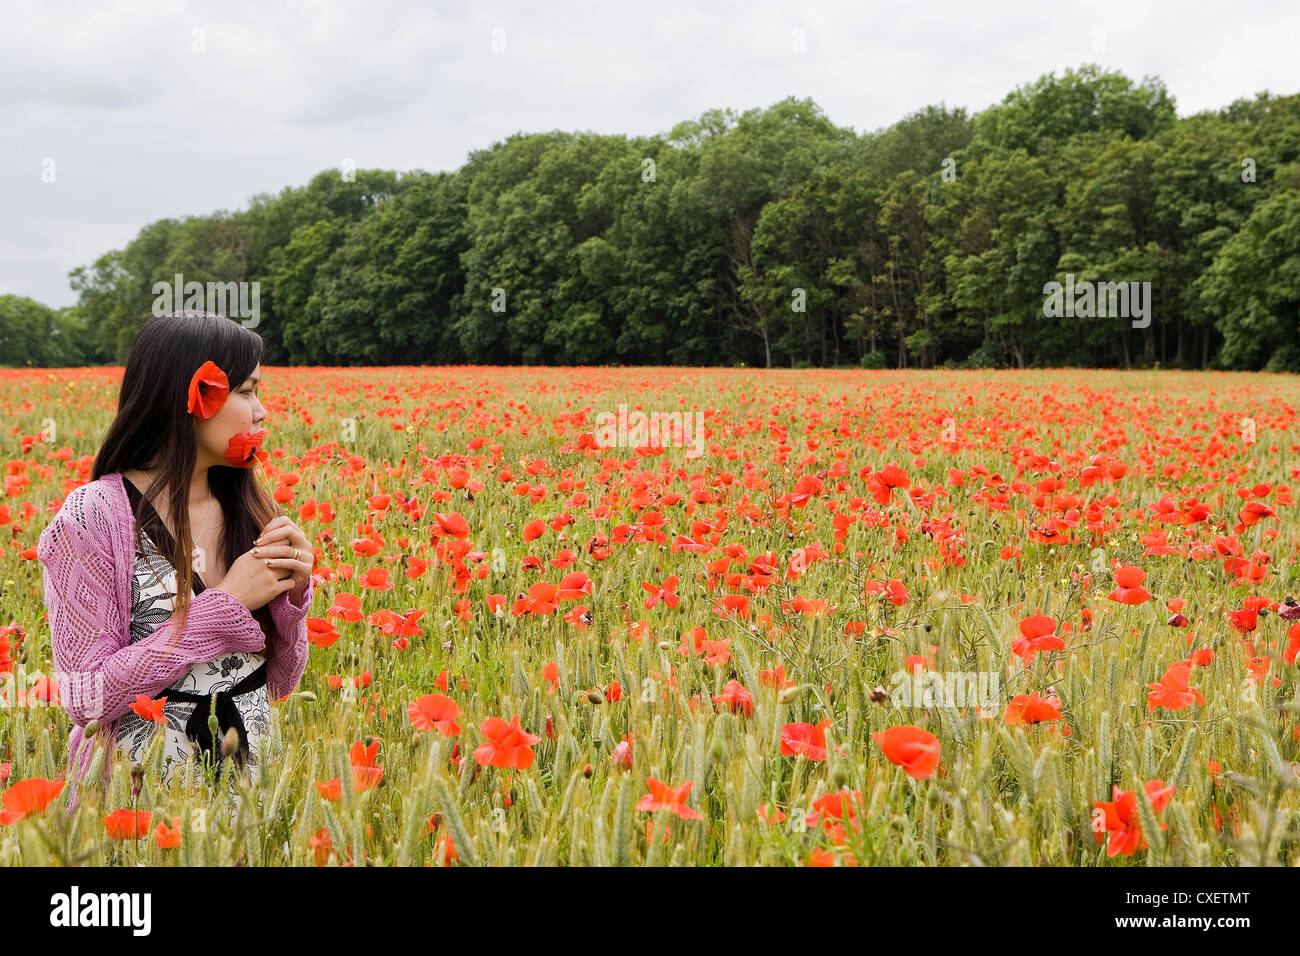 Jolie femme thaïlandaise avec Poppy dans ses cheveux dans un champ entouré de coquelicots Banque D'Images